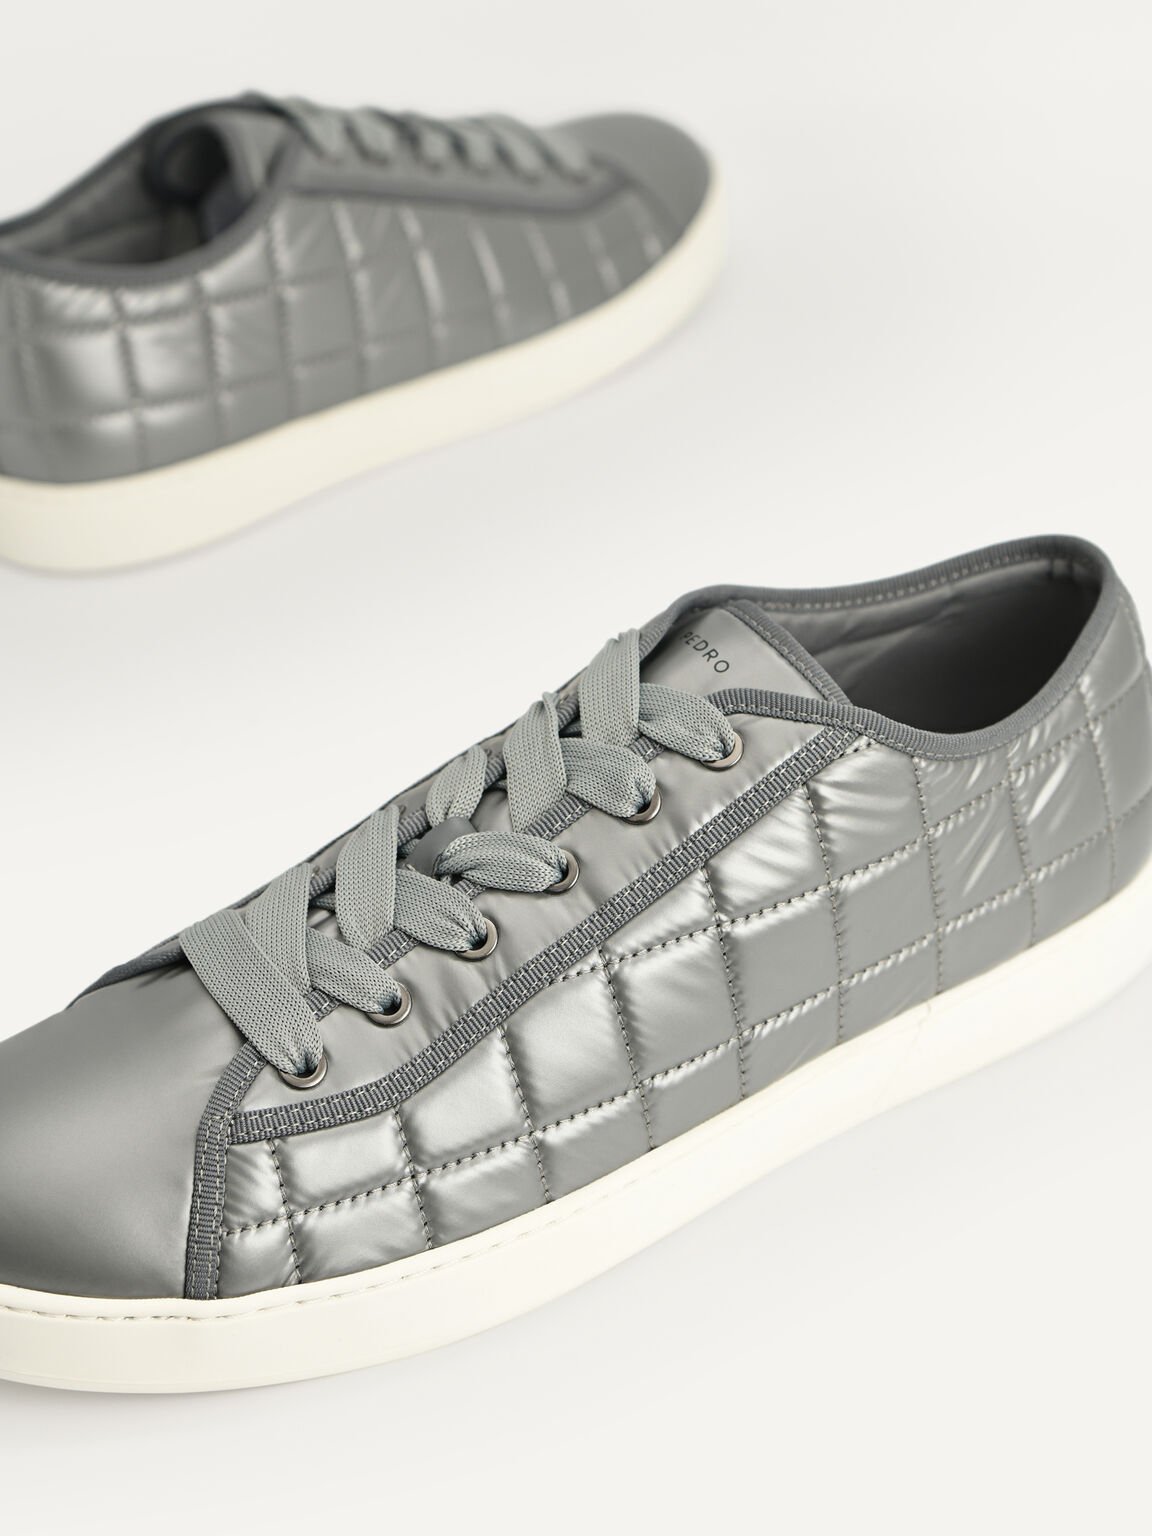 絎縫休閒運動鞋, 灰色